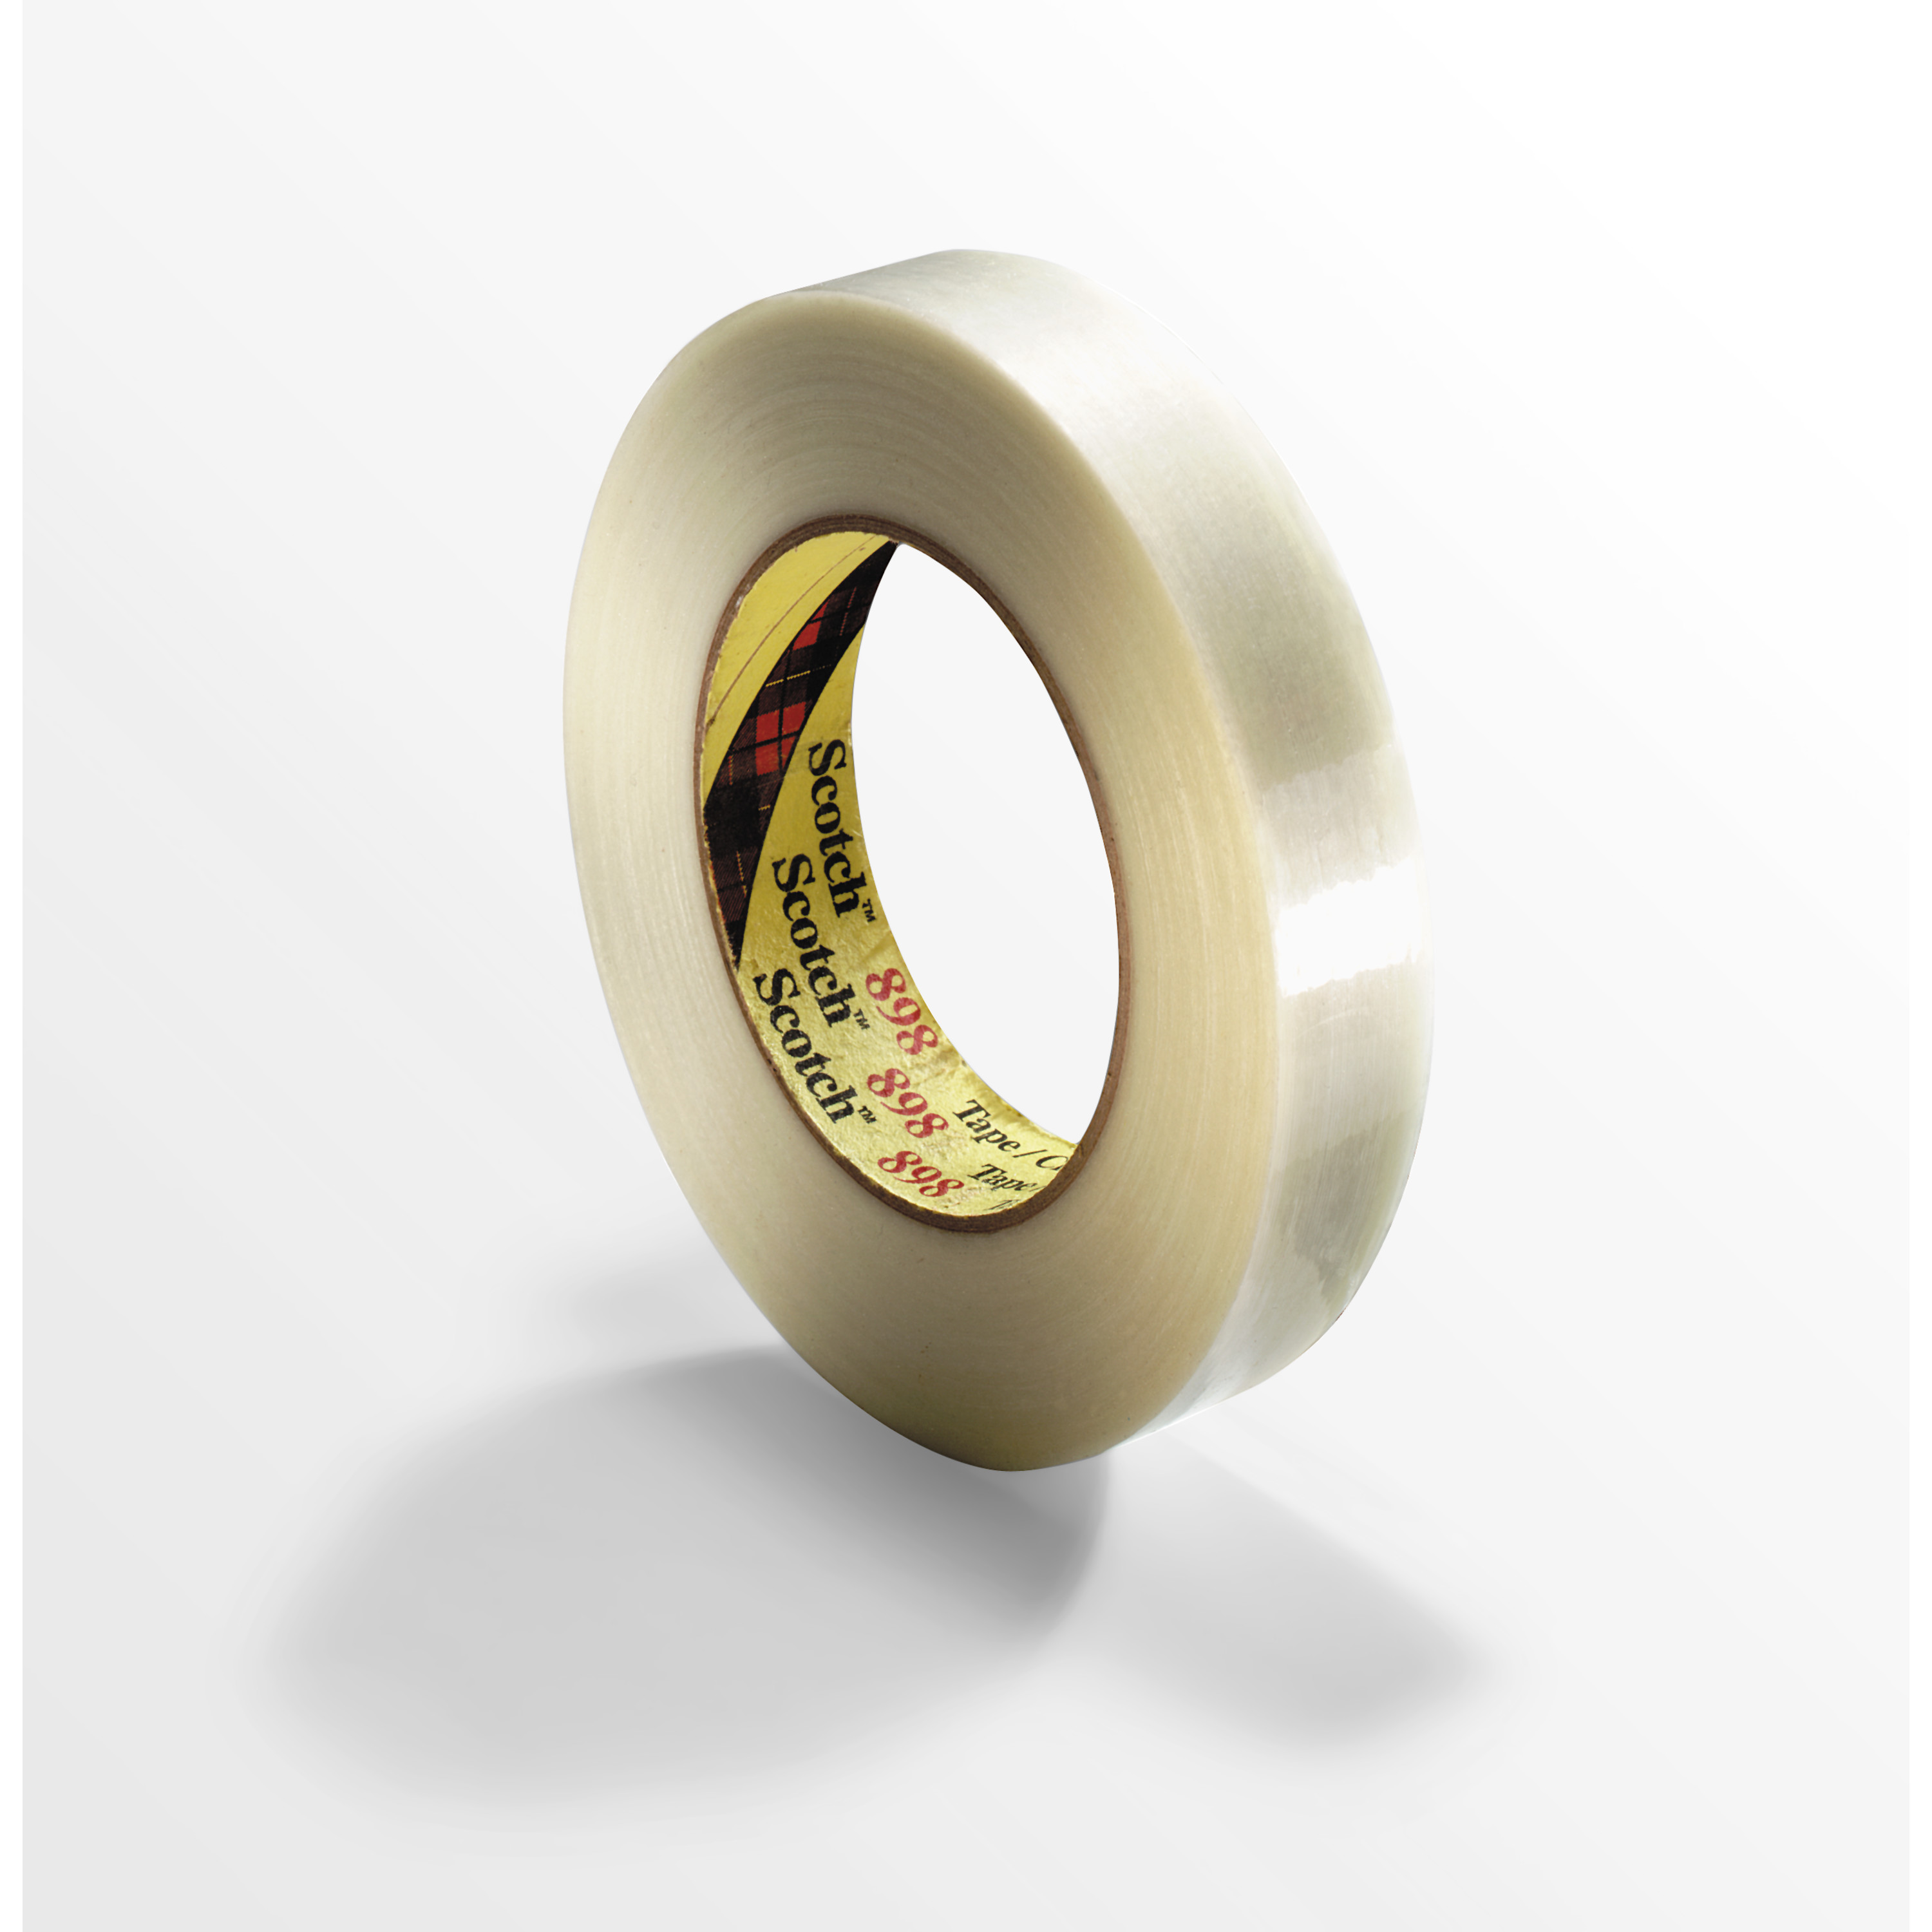 Scotch® Filament Tape 898, Clear, 36 mm x 55 m, 6.6 mil, 24 rolls per
case